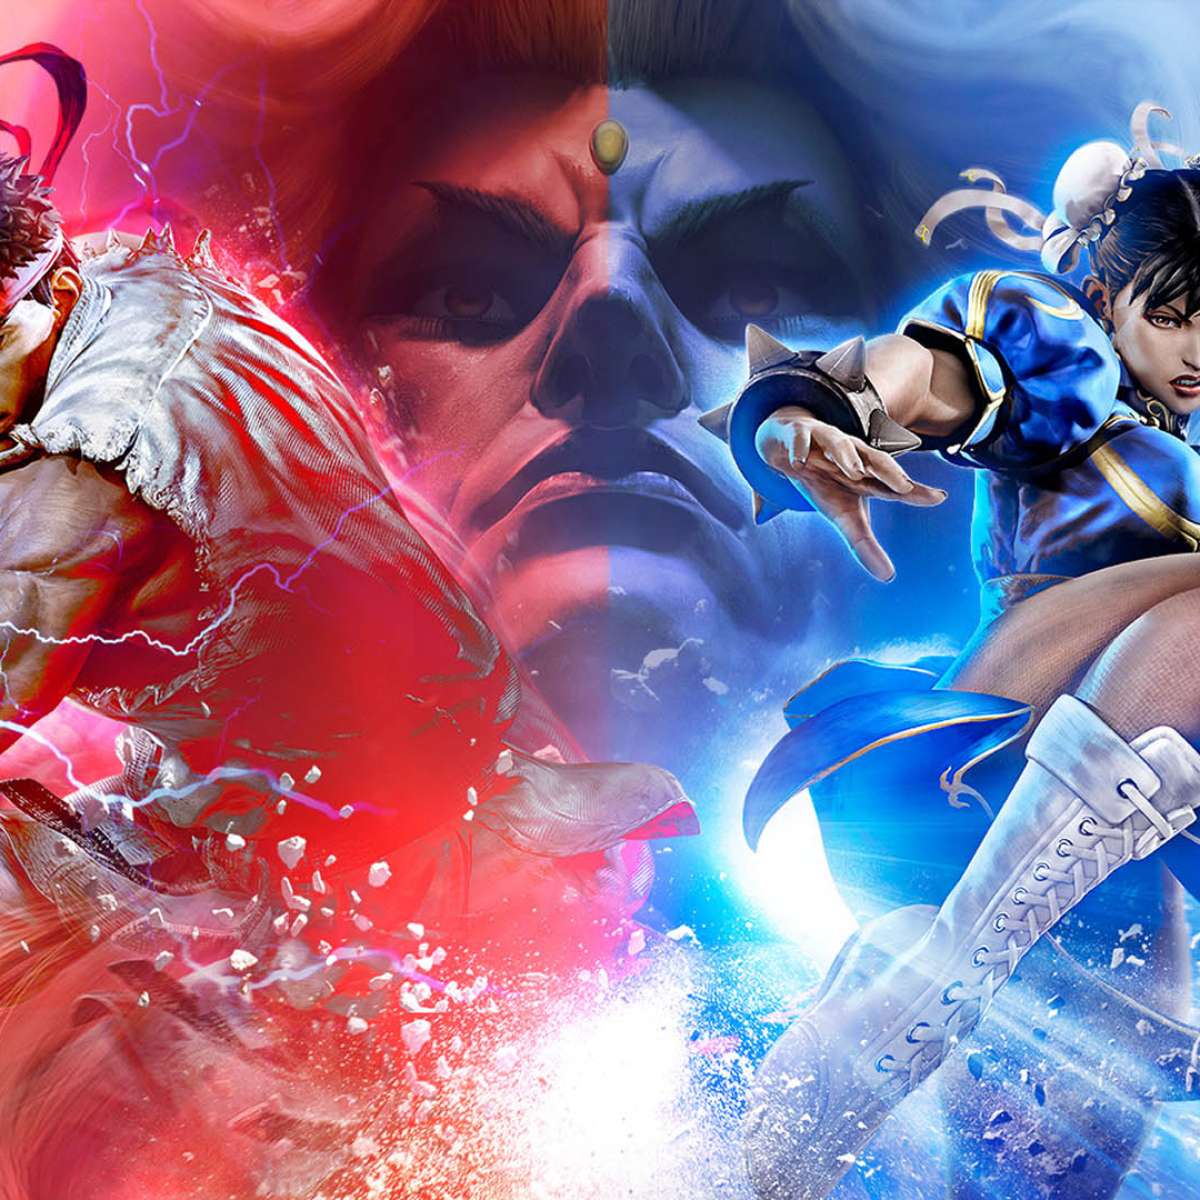 Sem tretas por enquanto: Tekken vs. Street Fighter vai para a